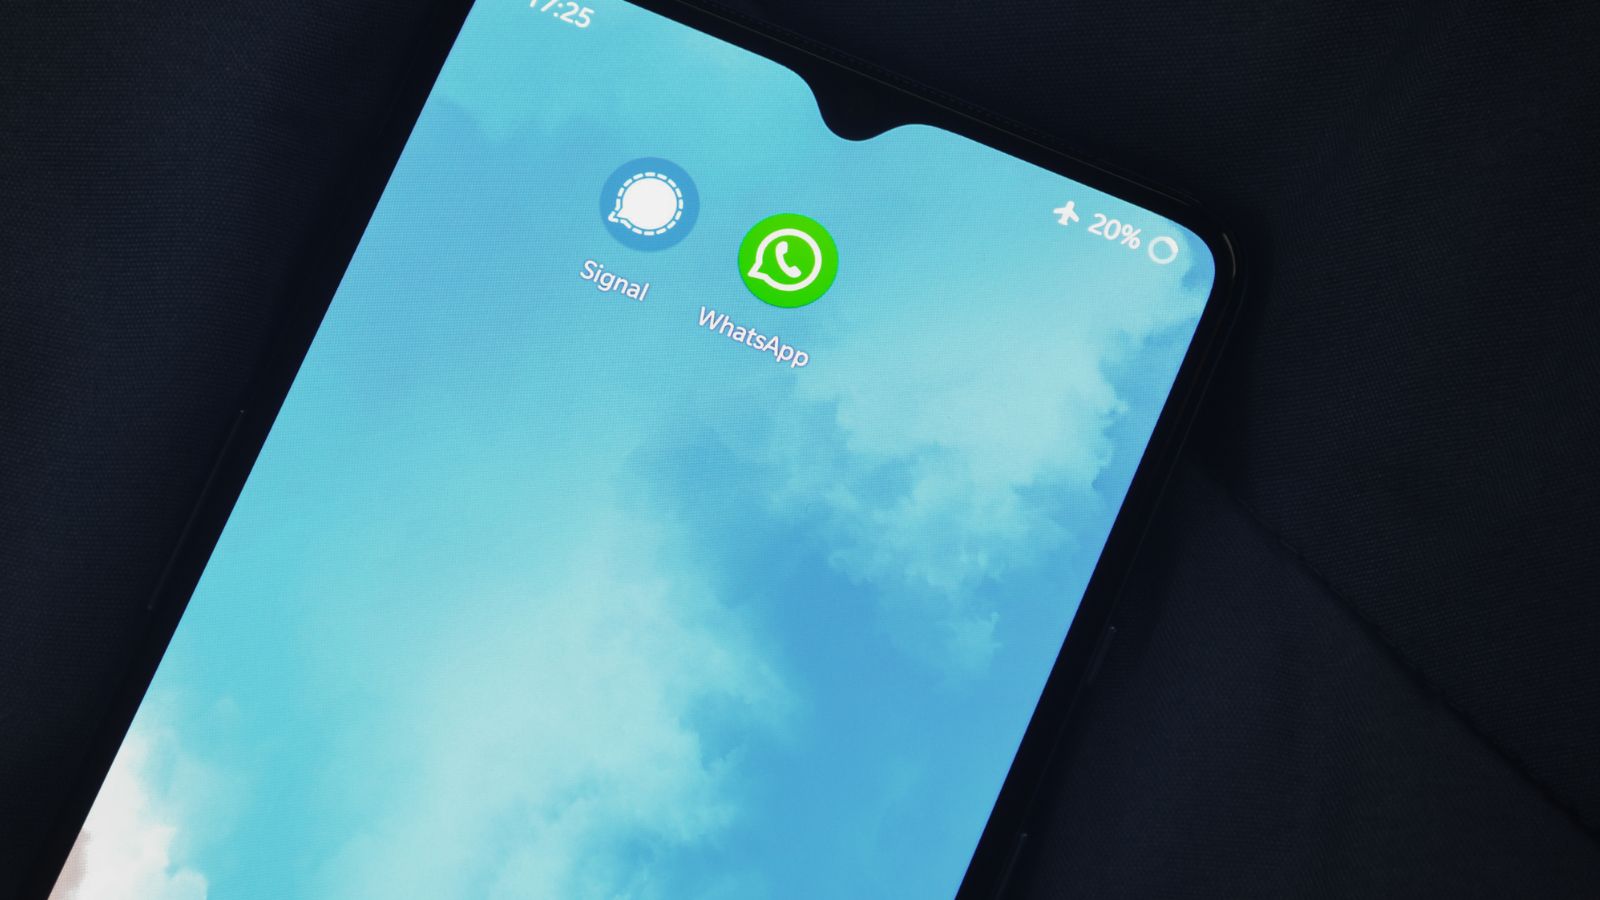 WhatsApp adotta Passkey, l'accesso alle chat sarà completamente diverso